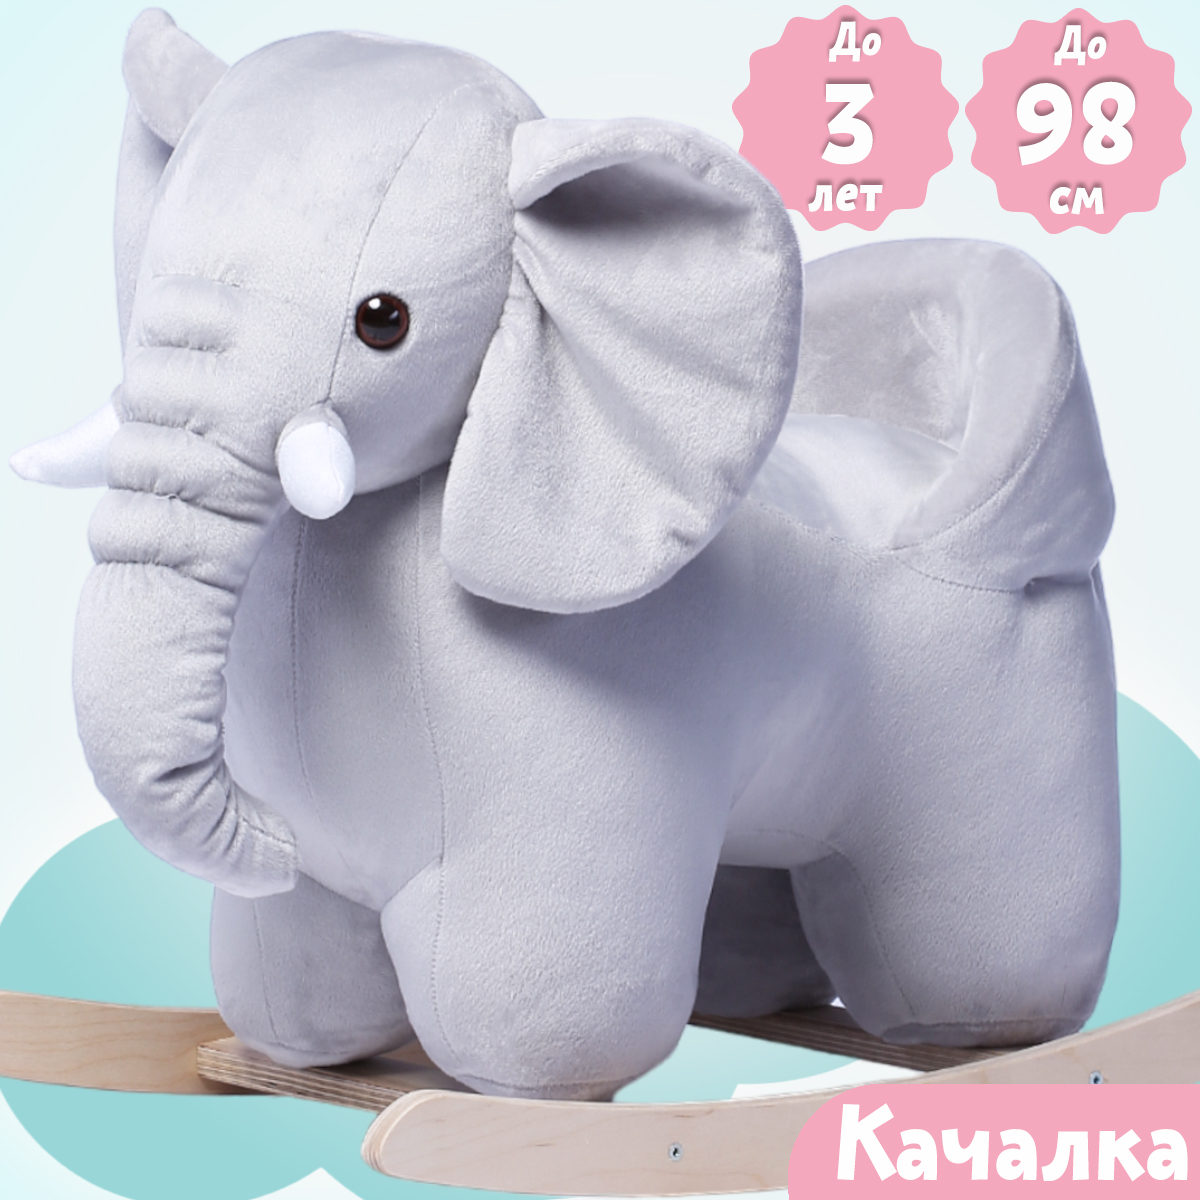 Качалка Нижегородская игрушка Слон серый - фото 2